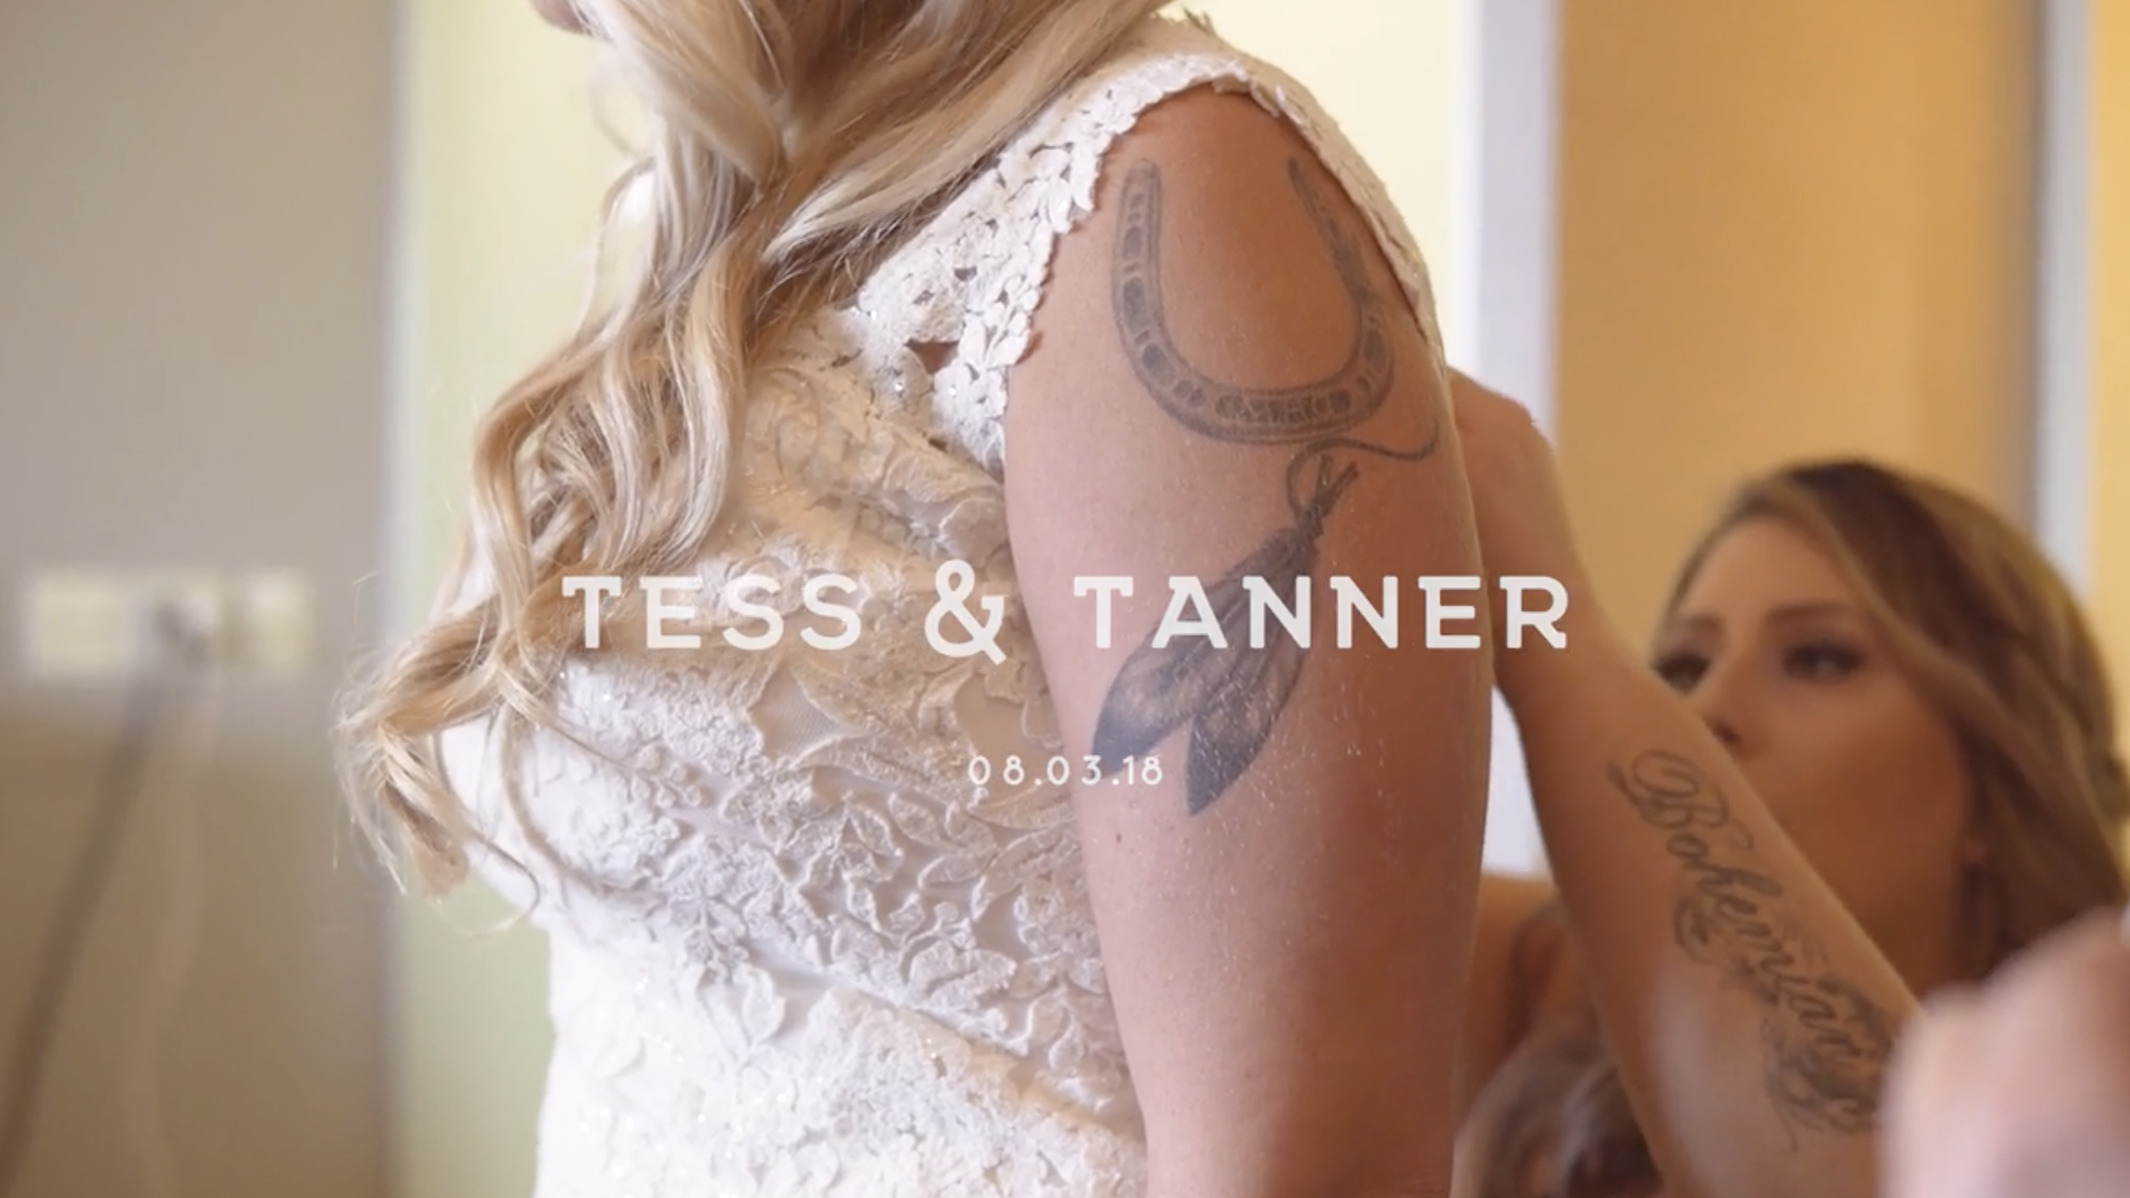 Tess & Tanner